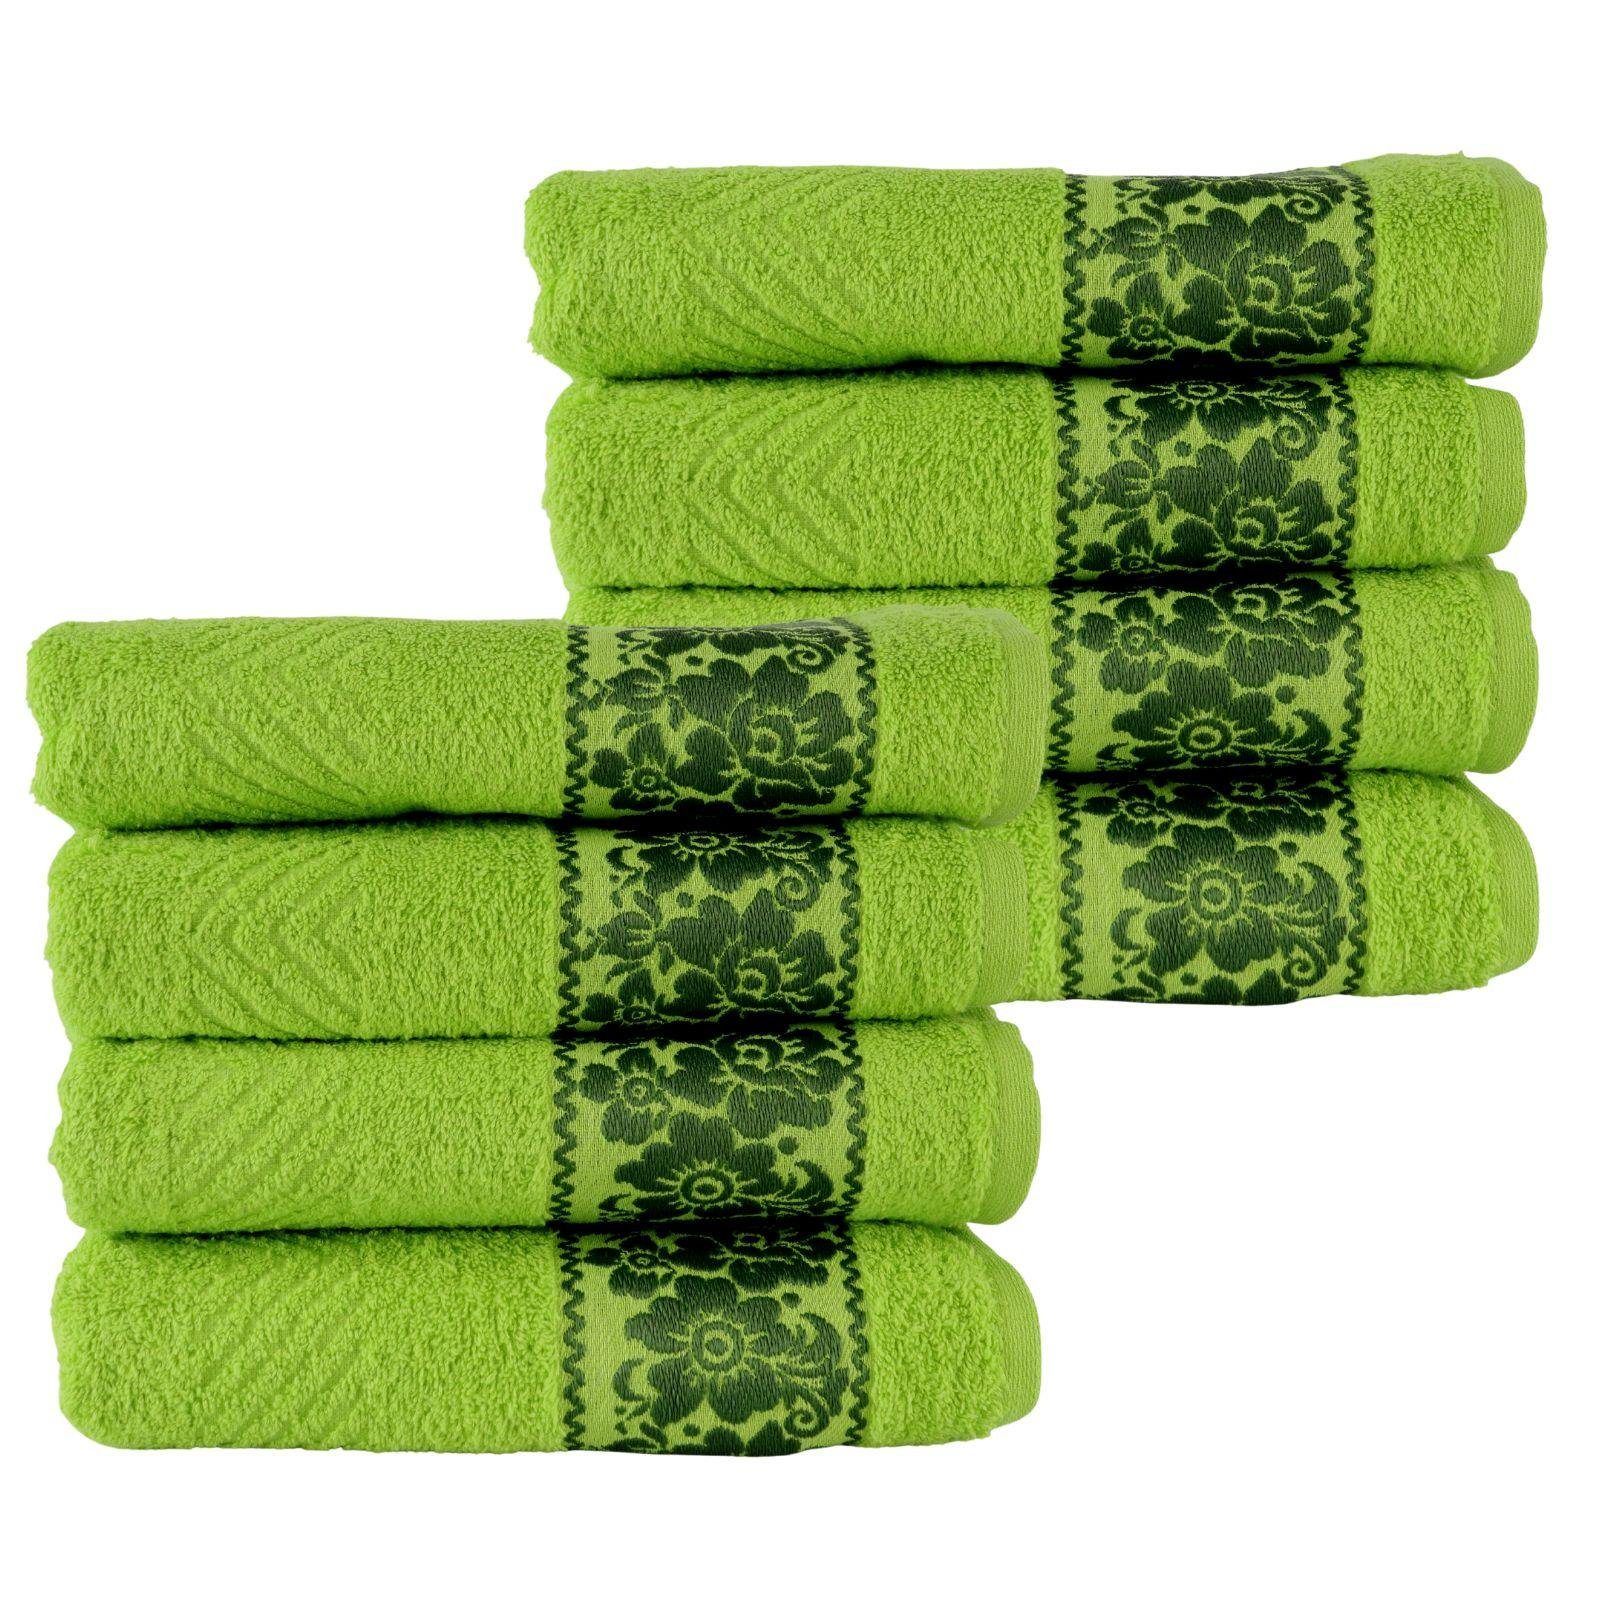 Plentyfy Handtücher Handtuch Set 8teilig aus 100% Baumwolle, 100% Baumwolle (8-St), Duschhandtuch - Frottee Handtuch Set - Badetuch